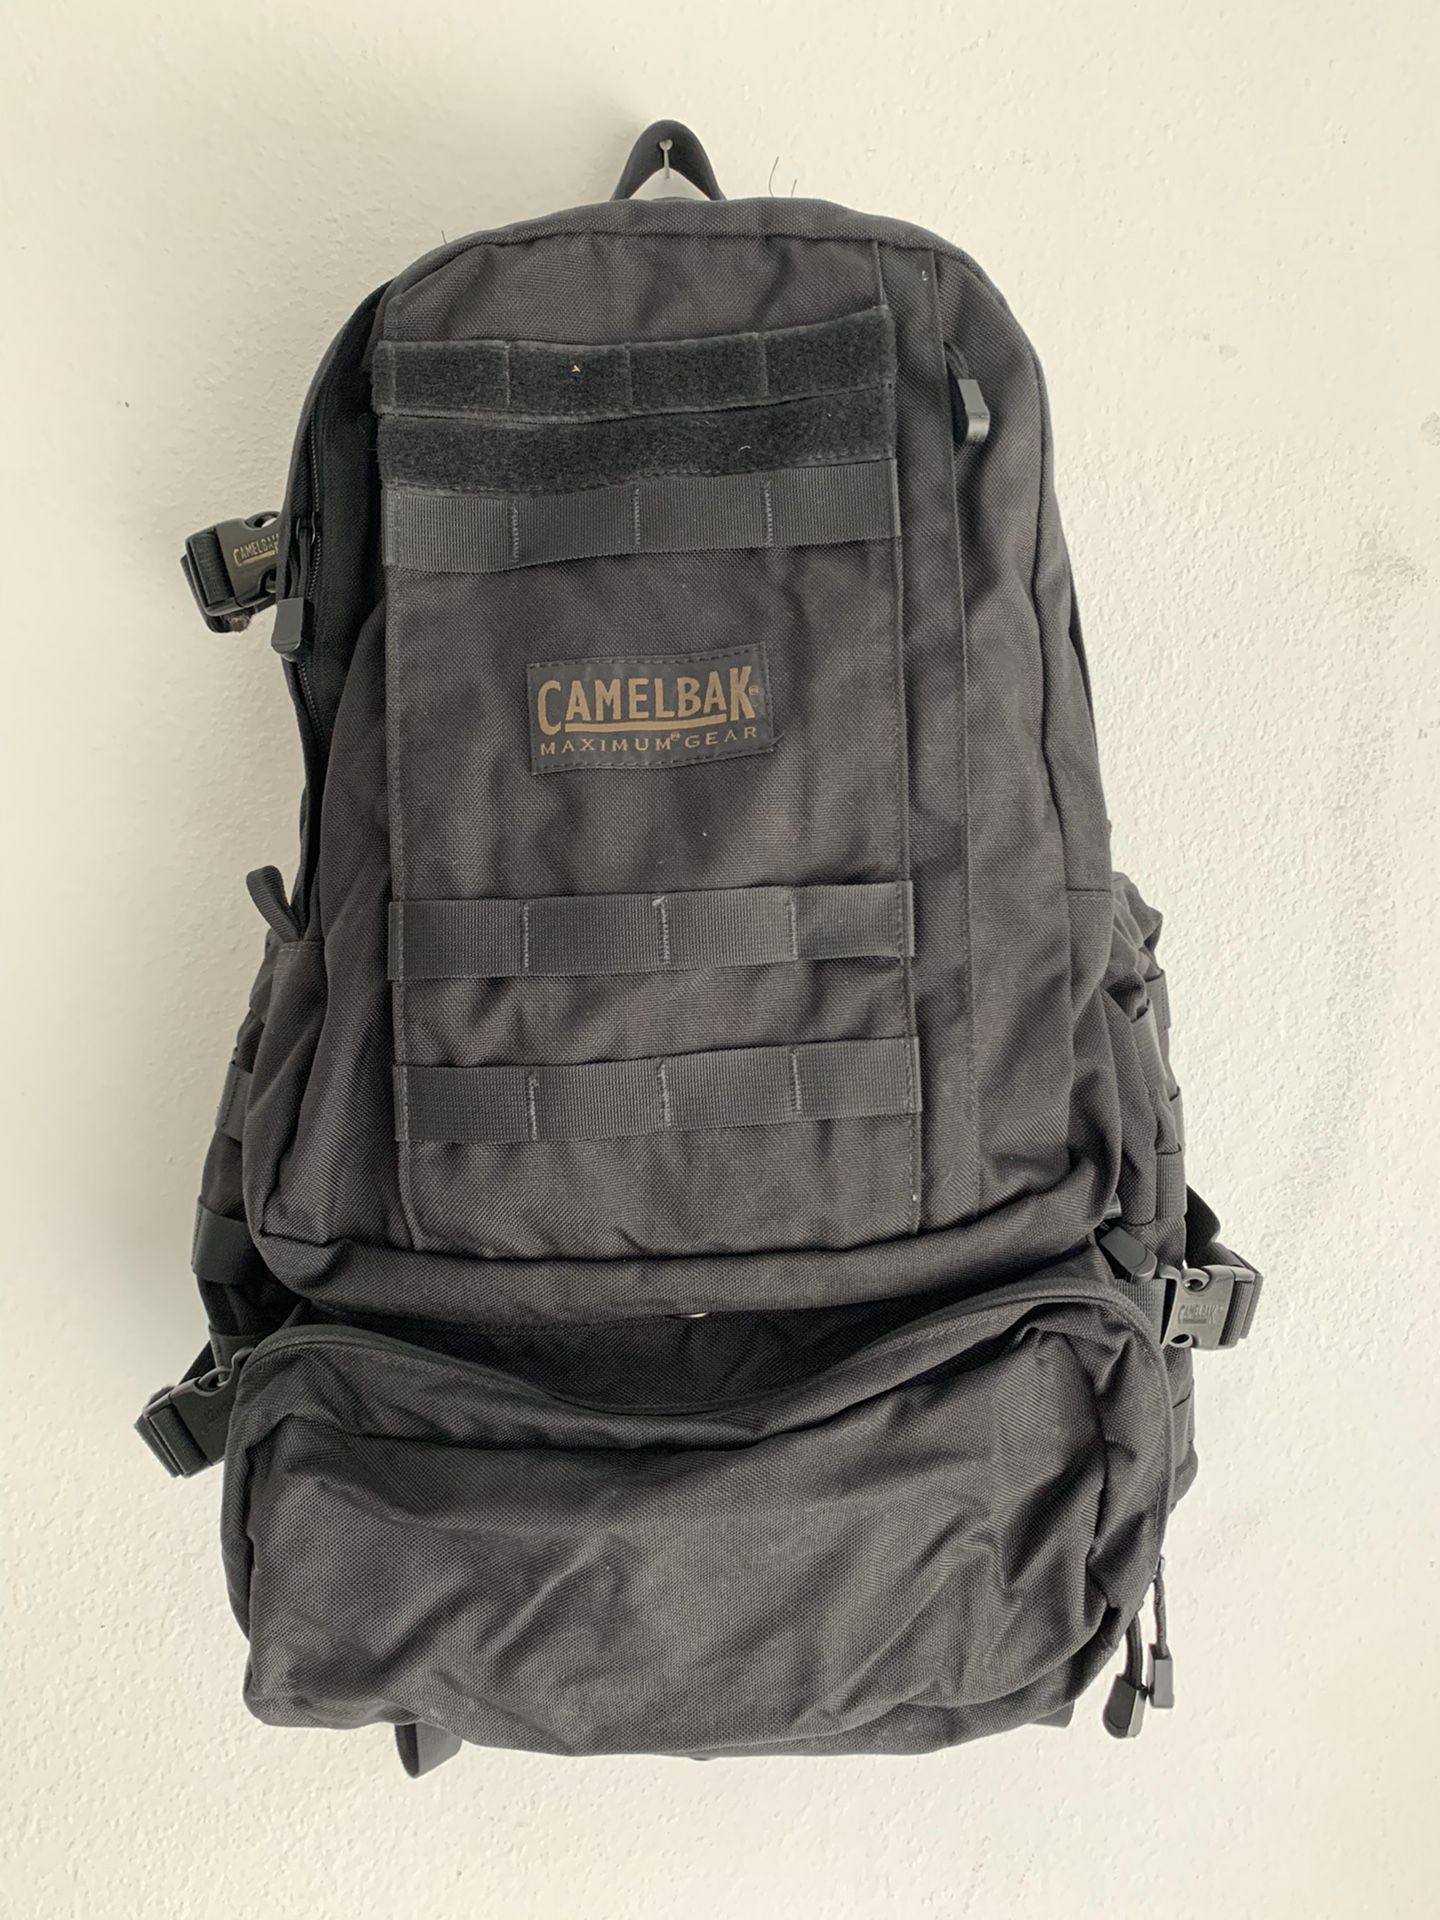 CamelBak Maximum Gear Backpack